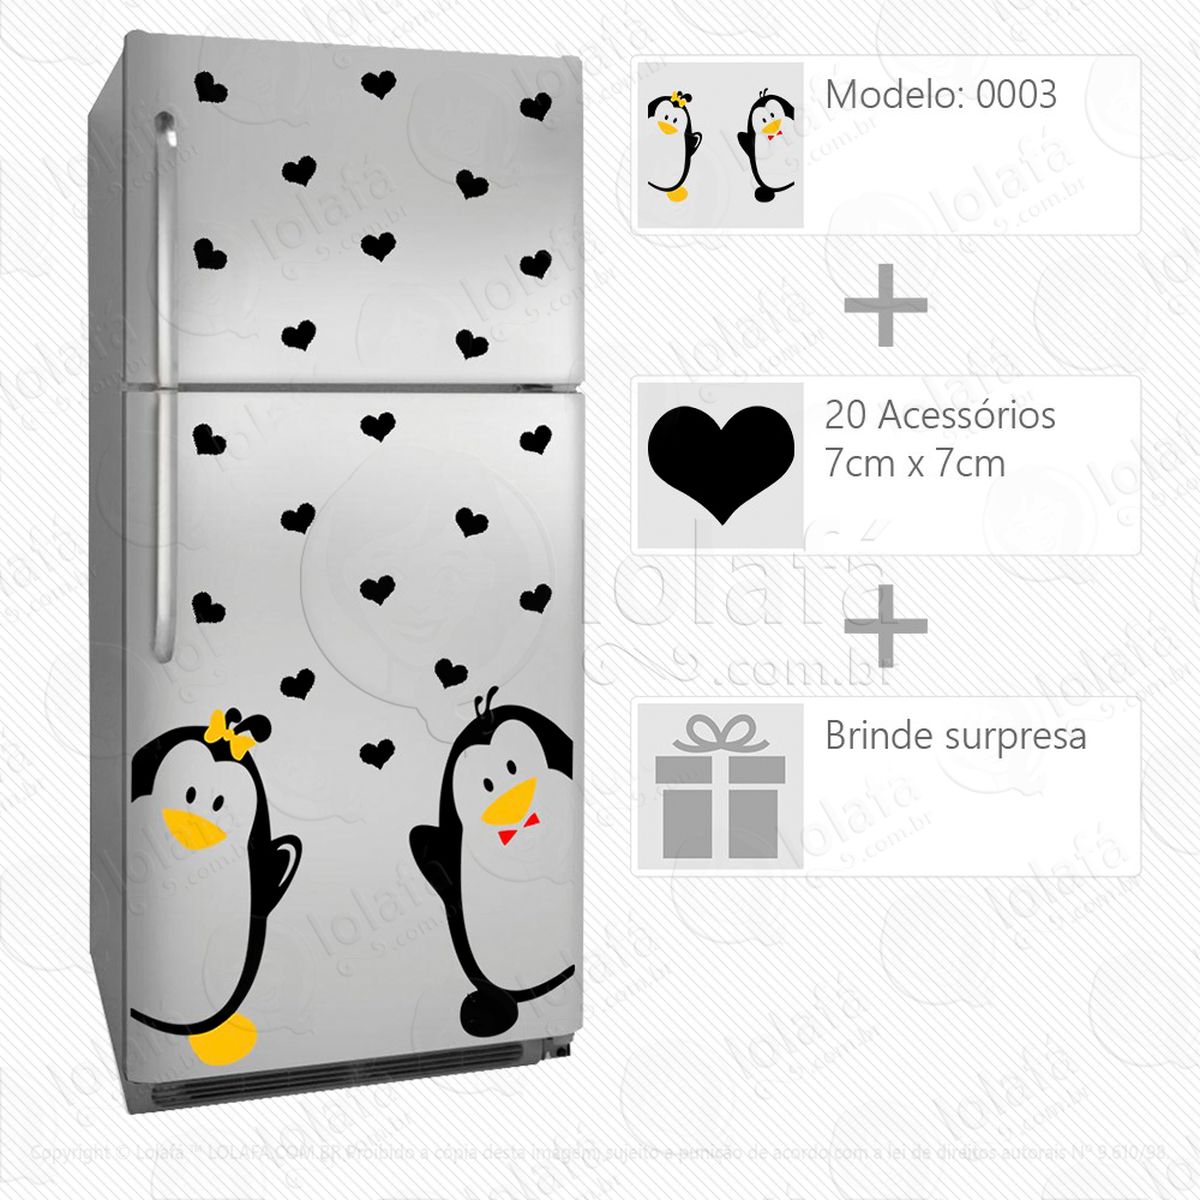 pinguins adesivo para geladeira e frigobar - mod:3